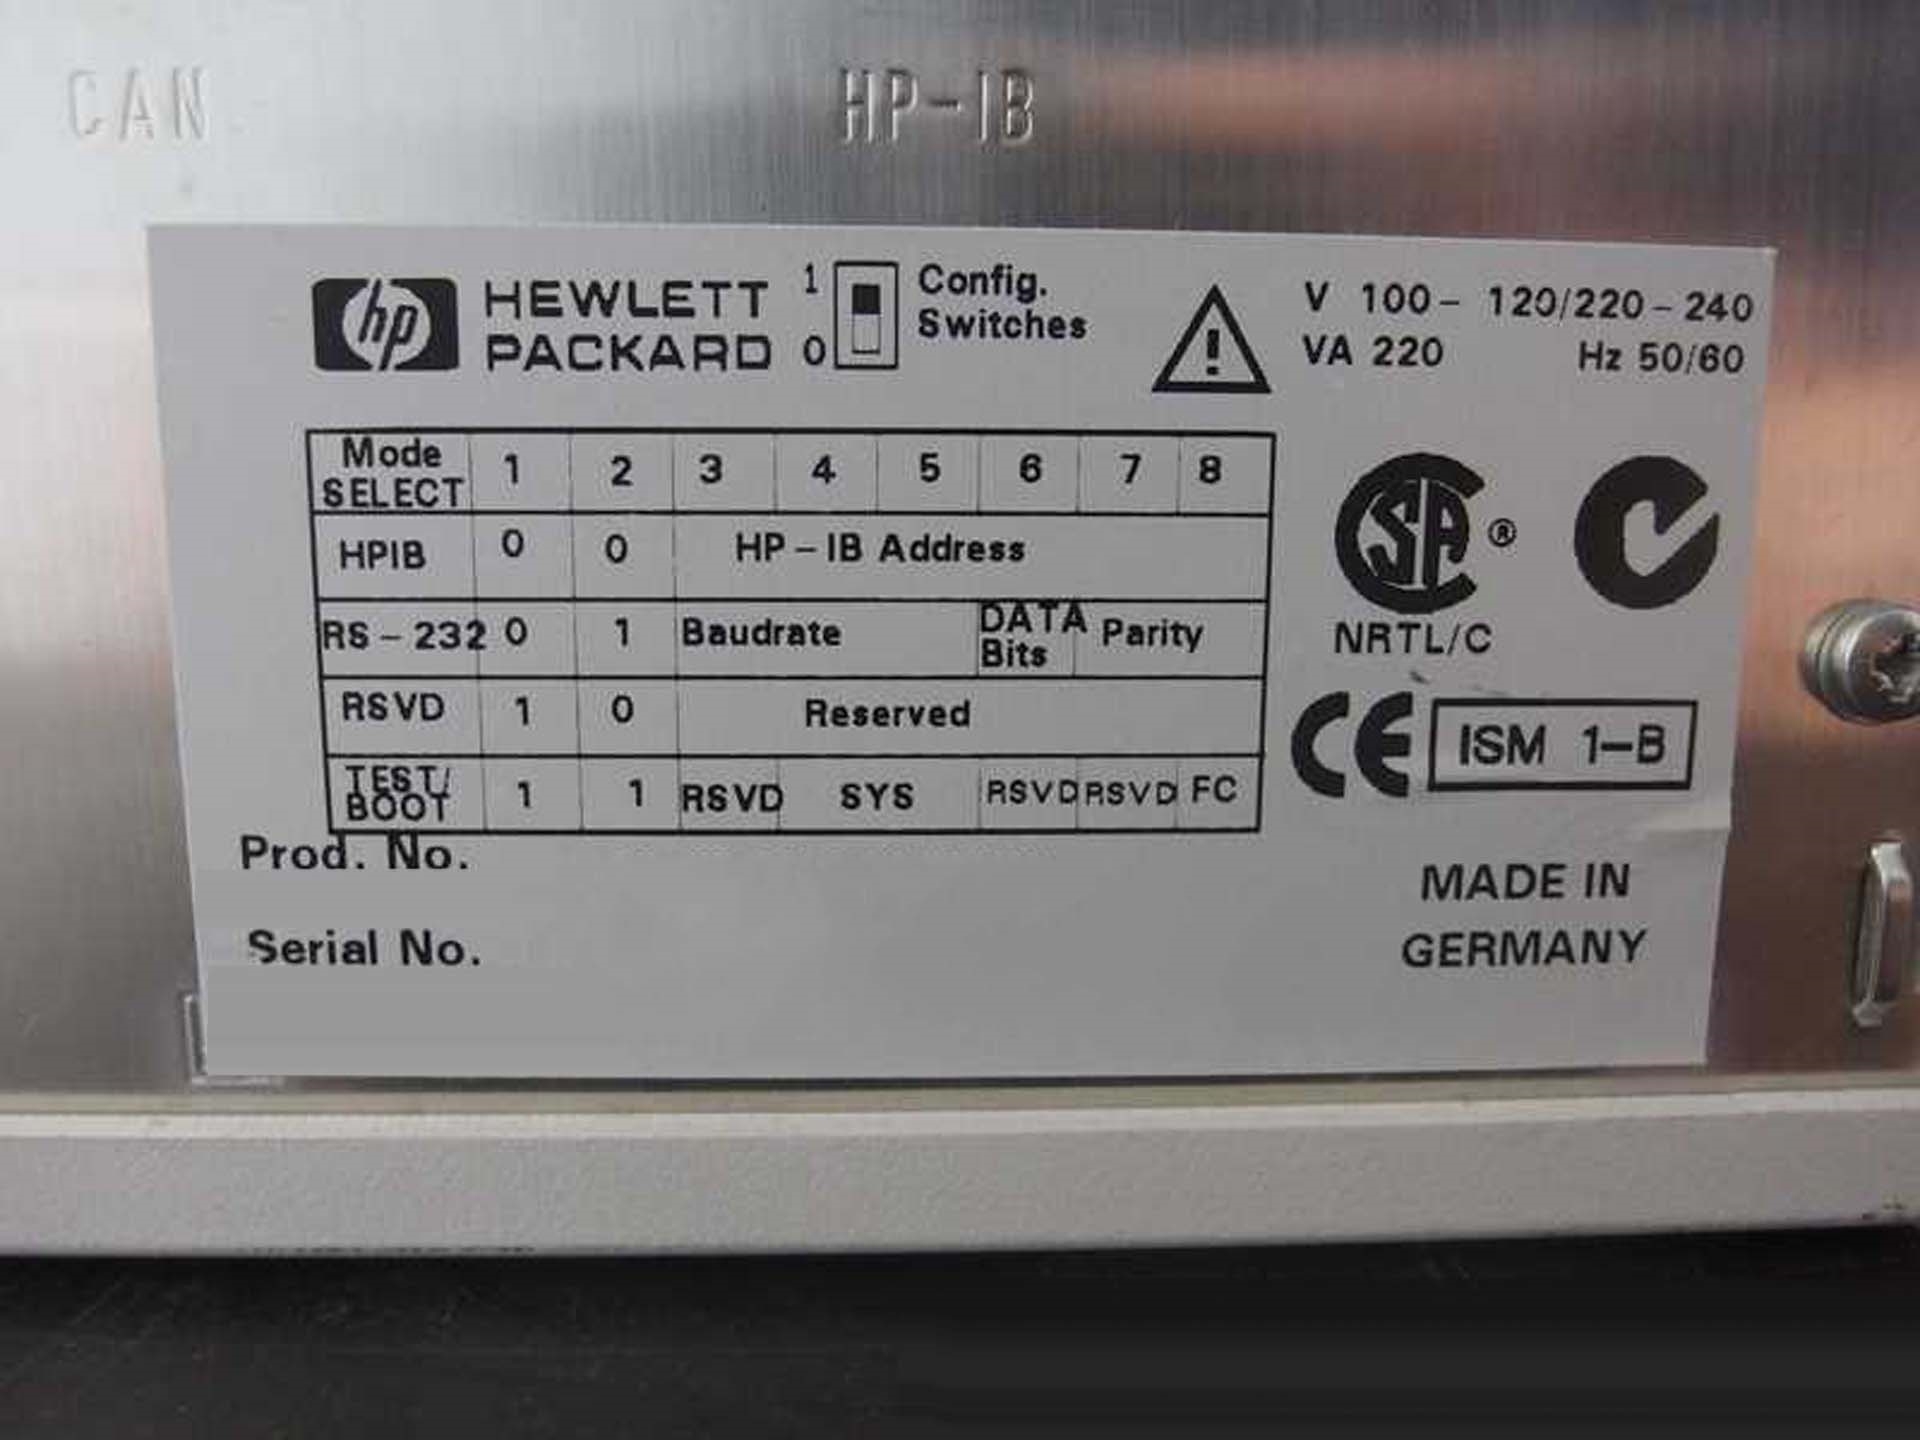 사진 사용됨 AGILENT / HP / HEWLETT-PACKARD / KEYSIGHT 1100 Series 판매용